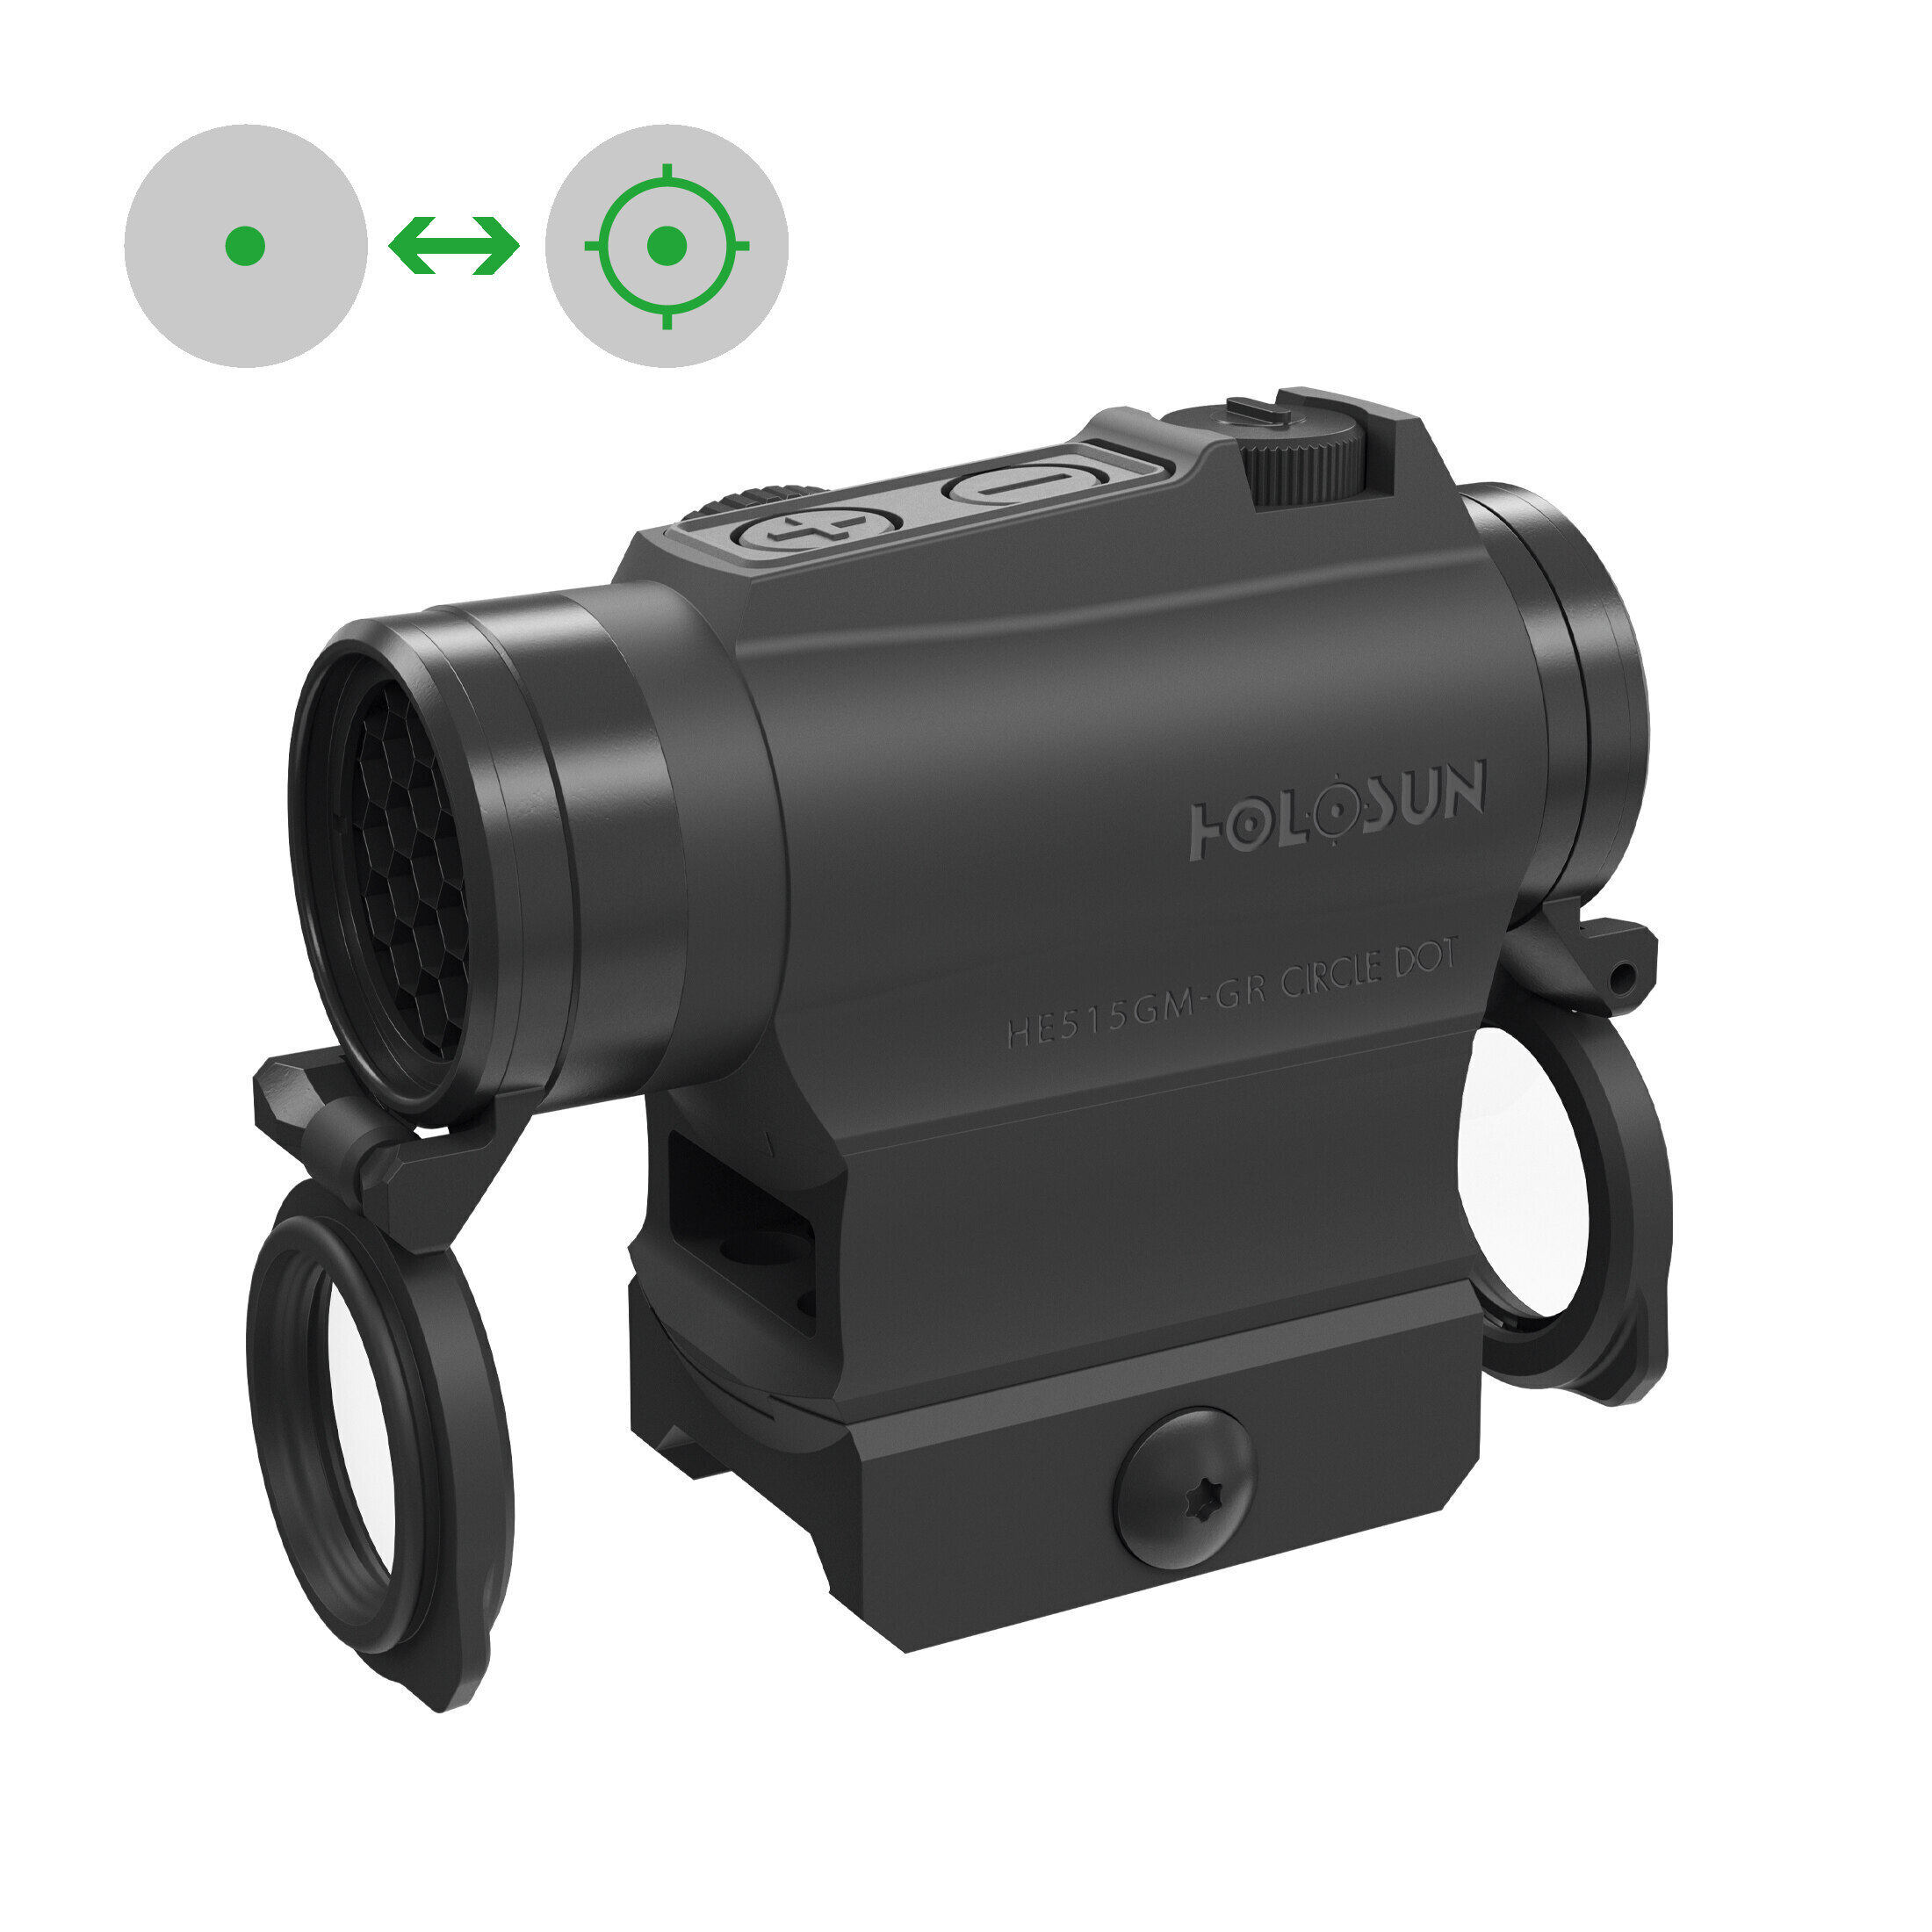 Holosun ELITE HE515G-M-GR Micro Ottica di puntamento Red Dot Punto verde Ottica reflex Punto circol…